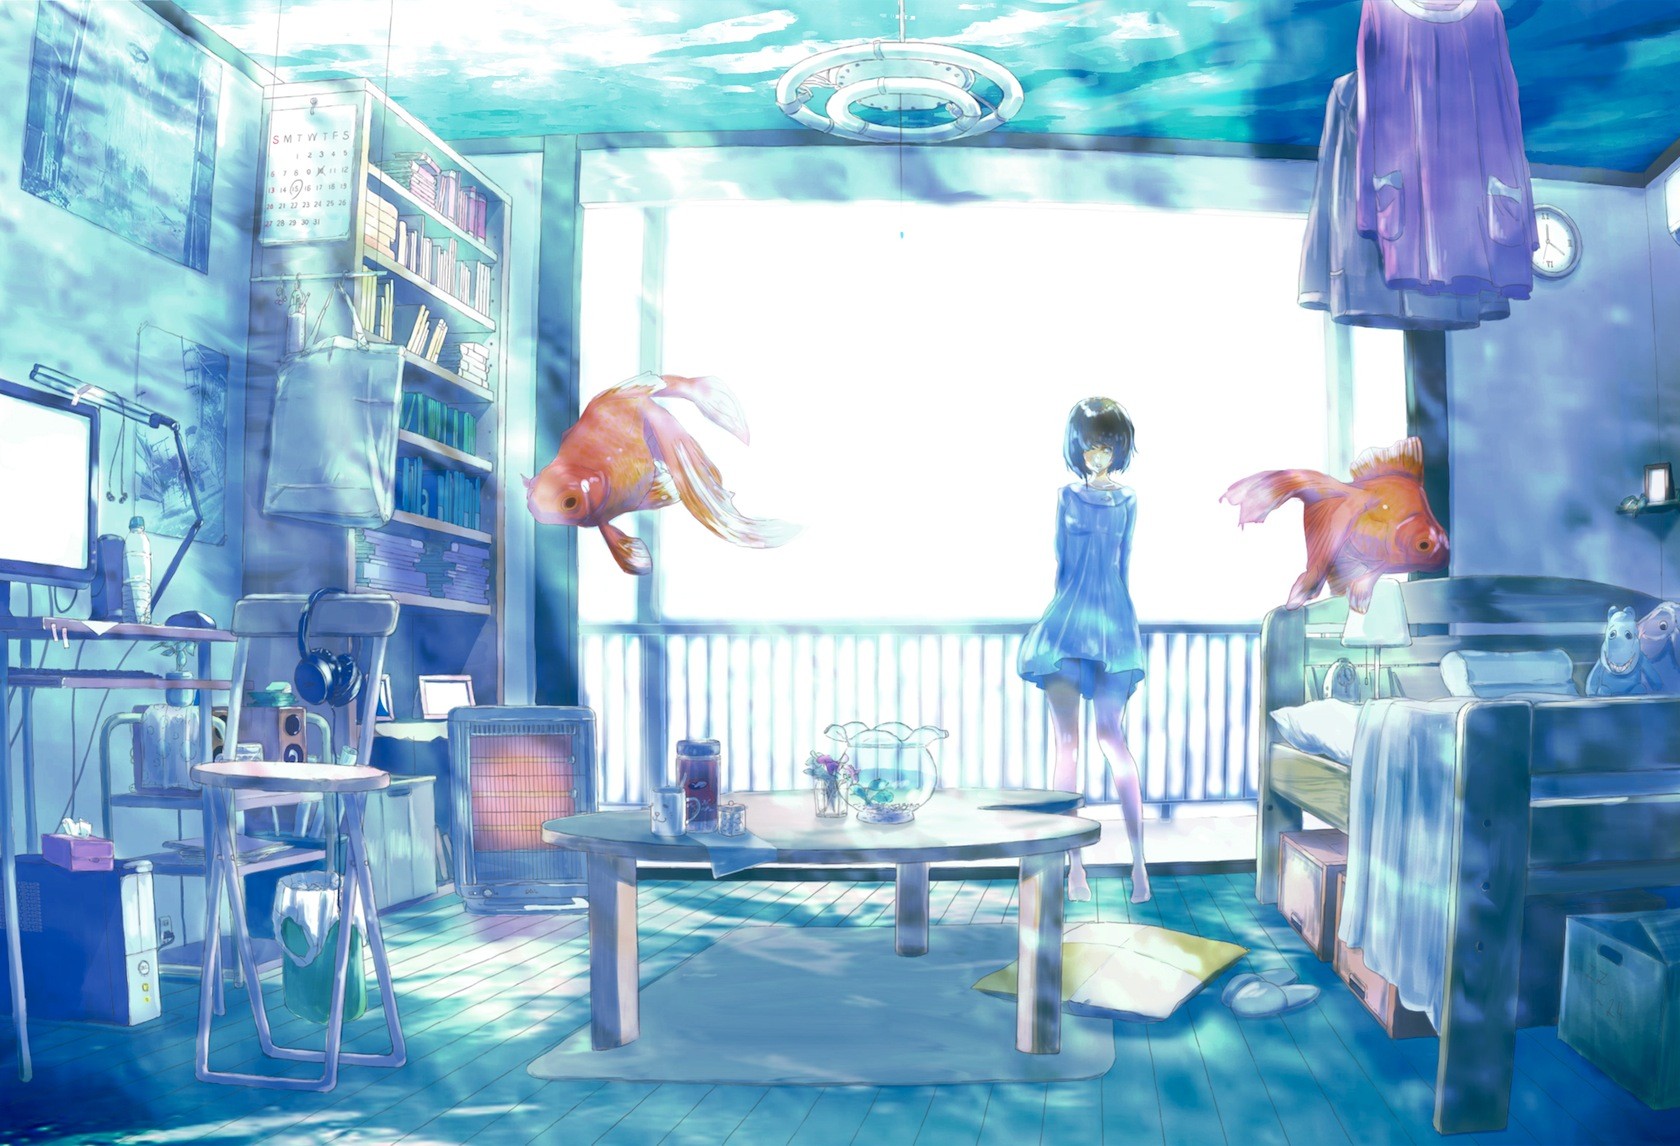 Anime Girl Room - 1680x1146 Wallpaper 